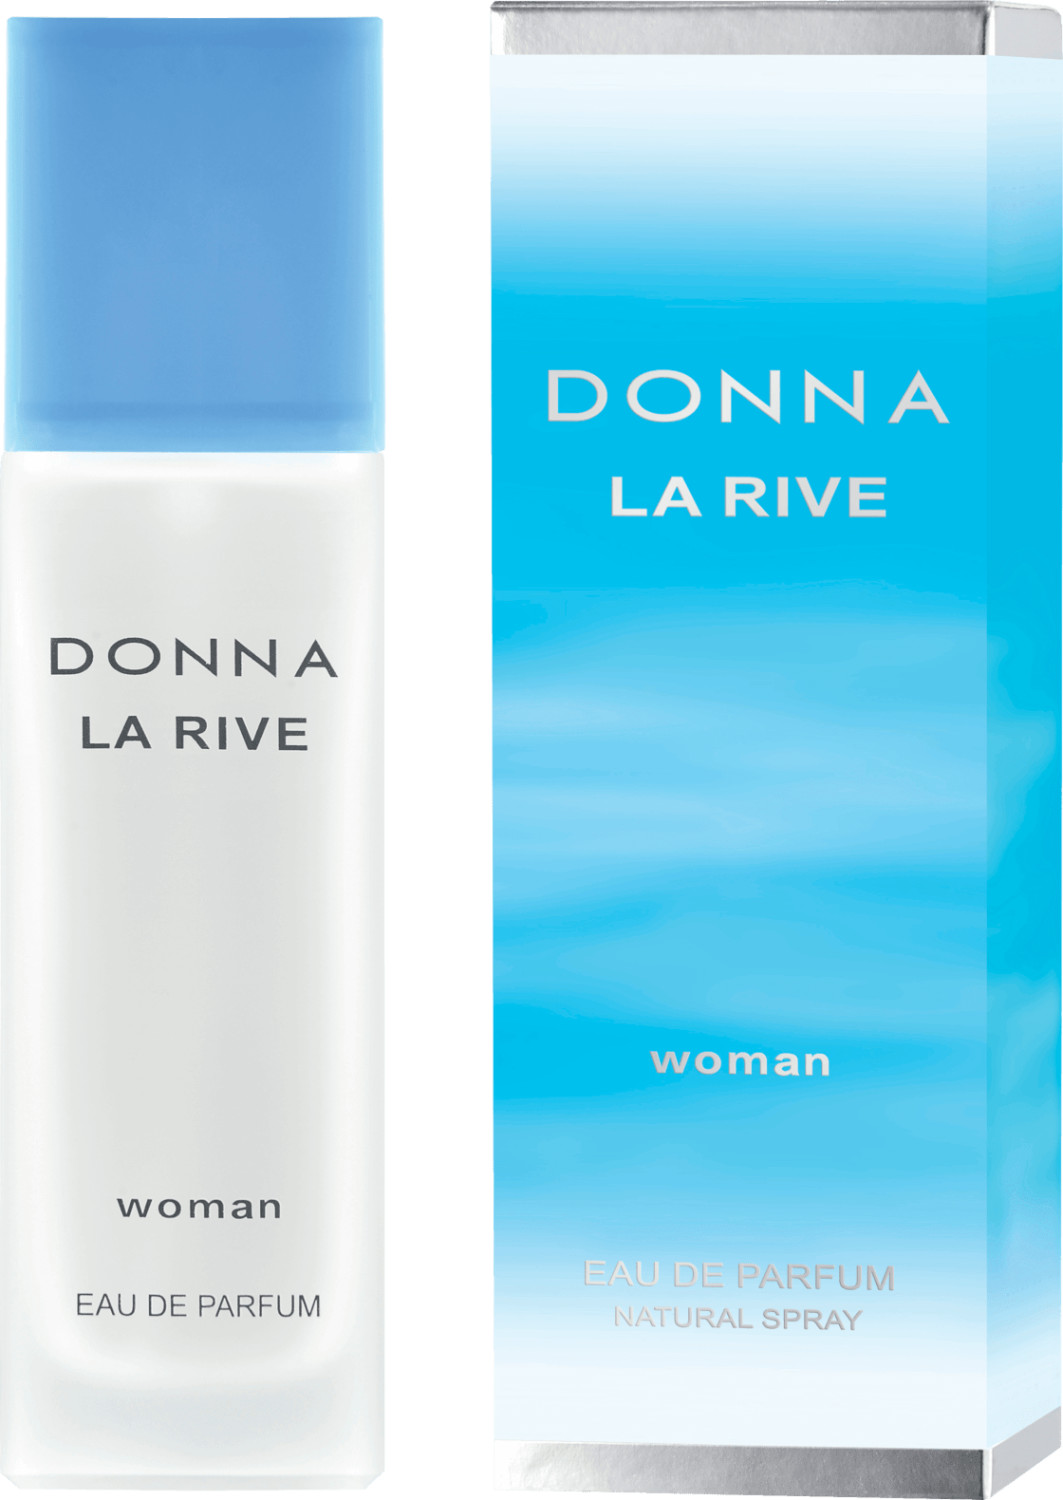 Photos - Women's Fragrance La Rive Donna Eau de Parfum  (90ml)